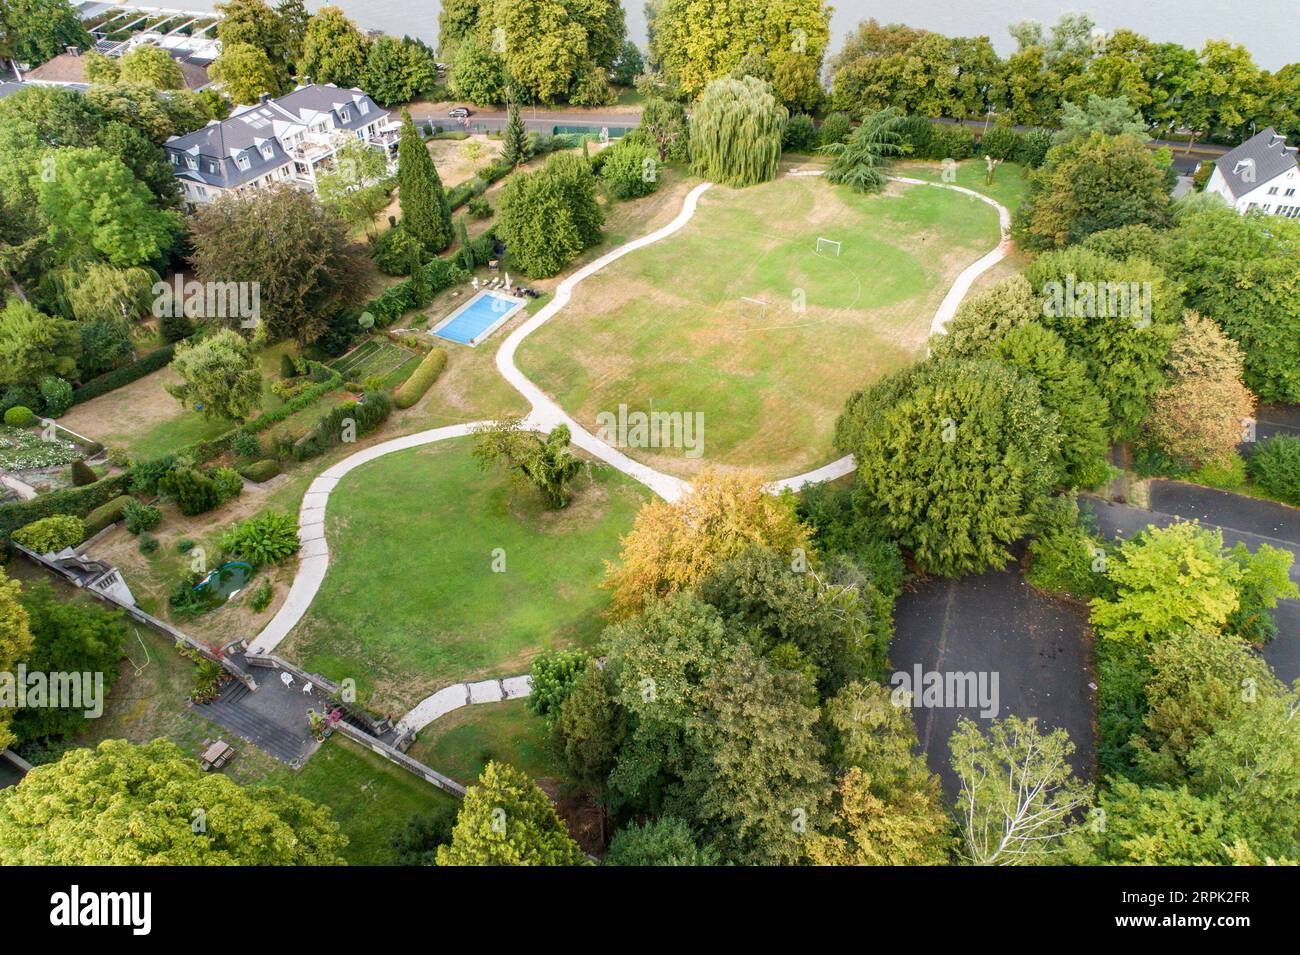 Vue aérienne drone du parc à Bonn Bad godesberg l'ancienne capitale de l'Allemagne avec quartier typique de maison allemande. Banque D'Images